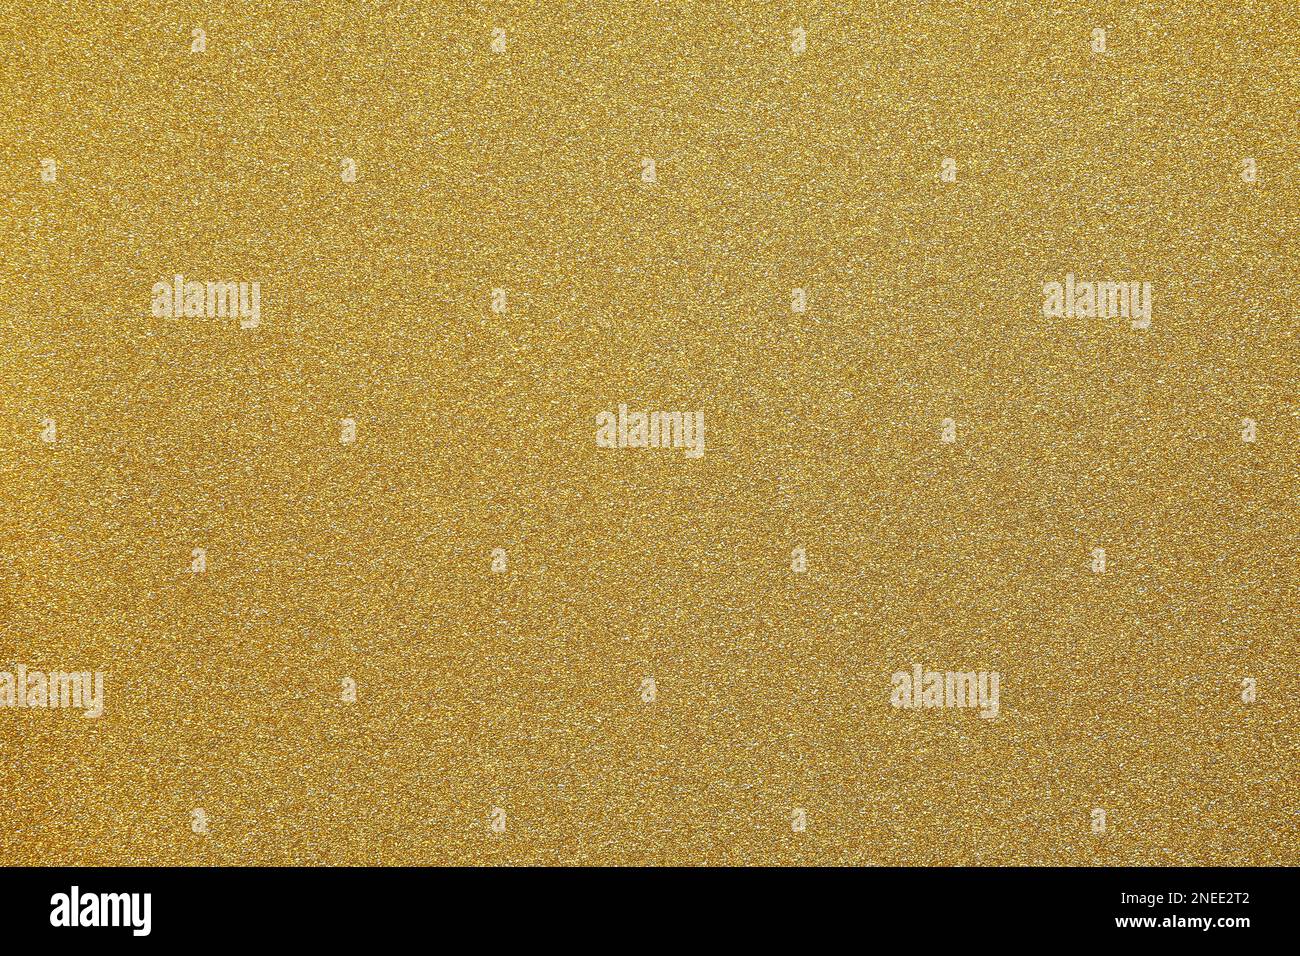 Goldener Glitter Texturhintergrund - goldenes strukturiertes Muster Stockfoto